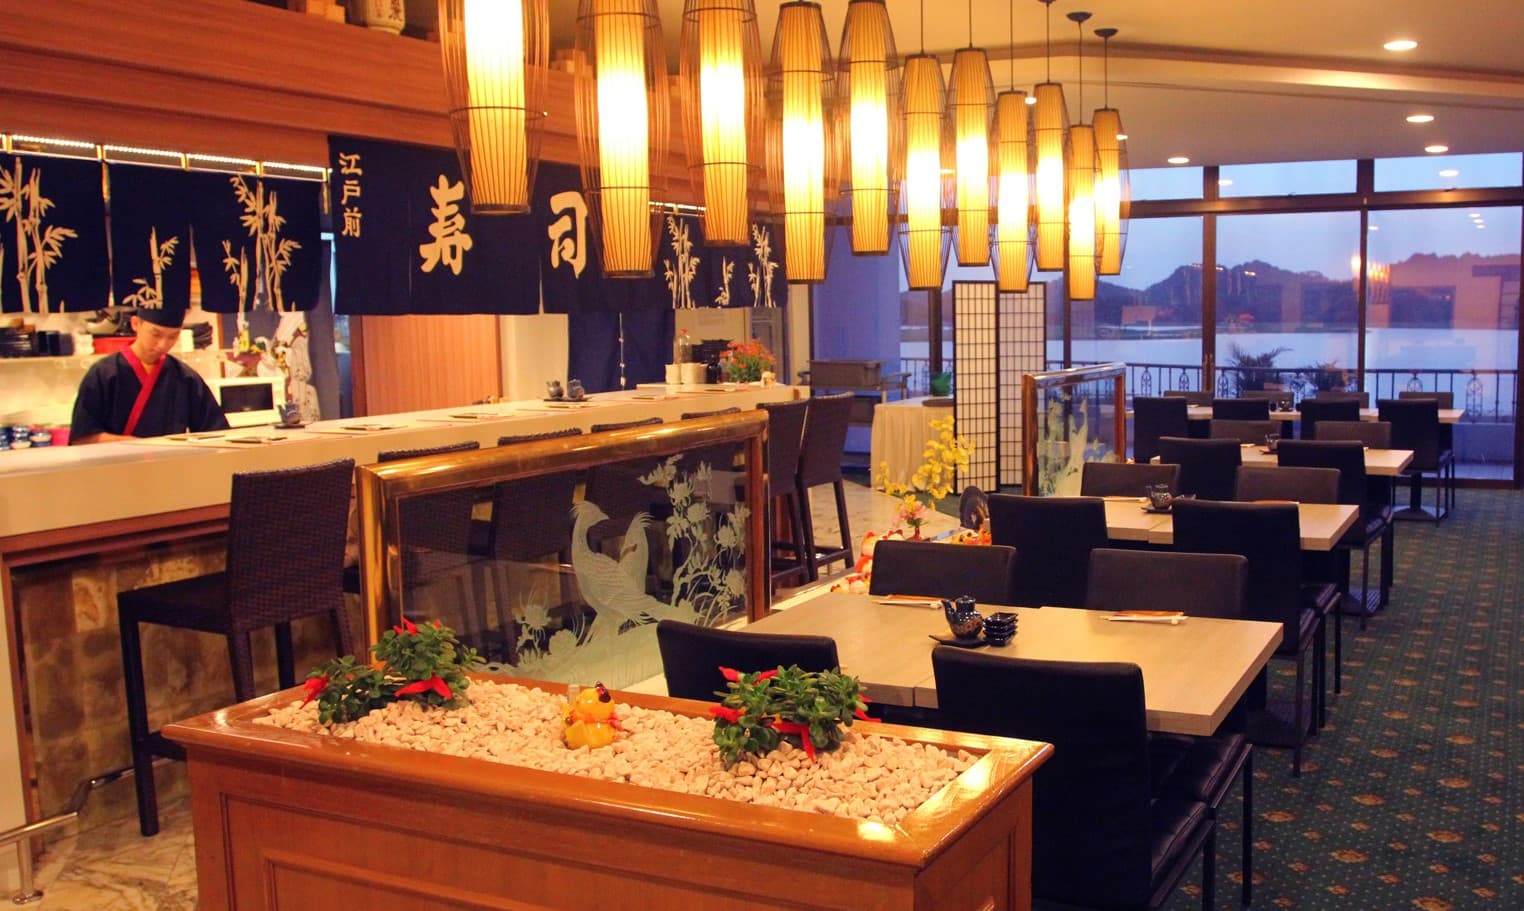 Tham khảo thiết kế nhà hàng Nhật theo phong cách Teppanyaki